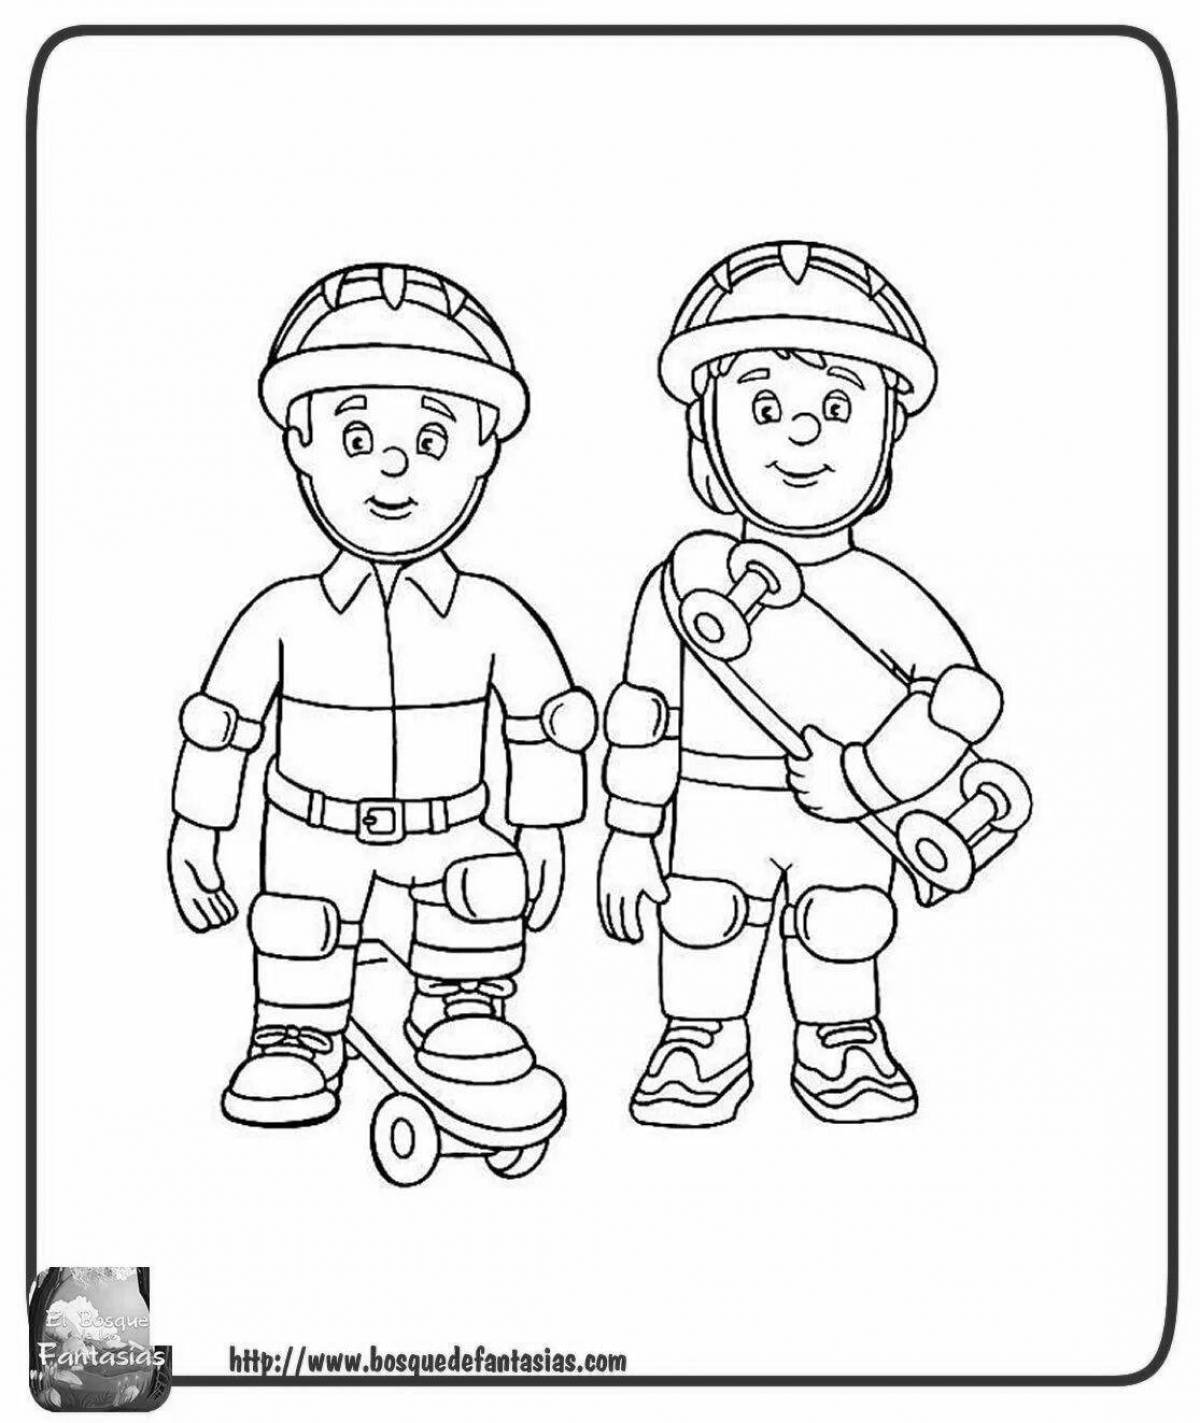 Веселая раскраска пожарный сэм для детей